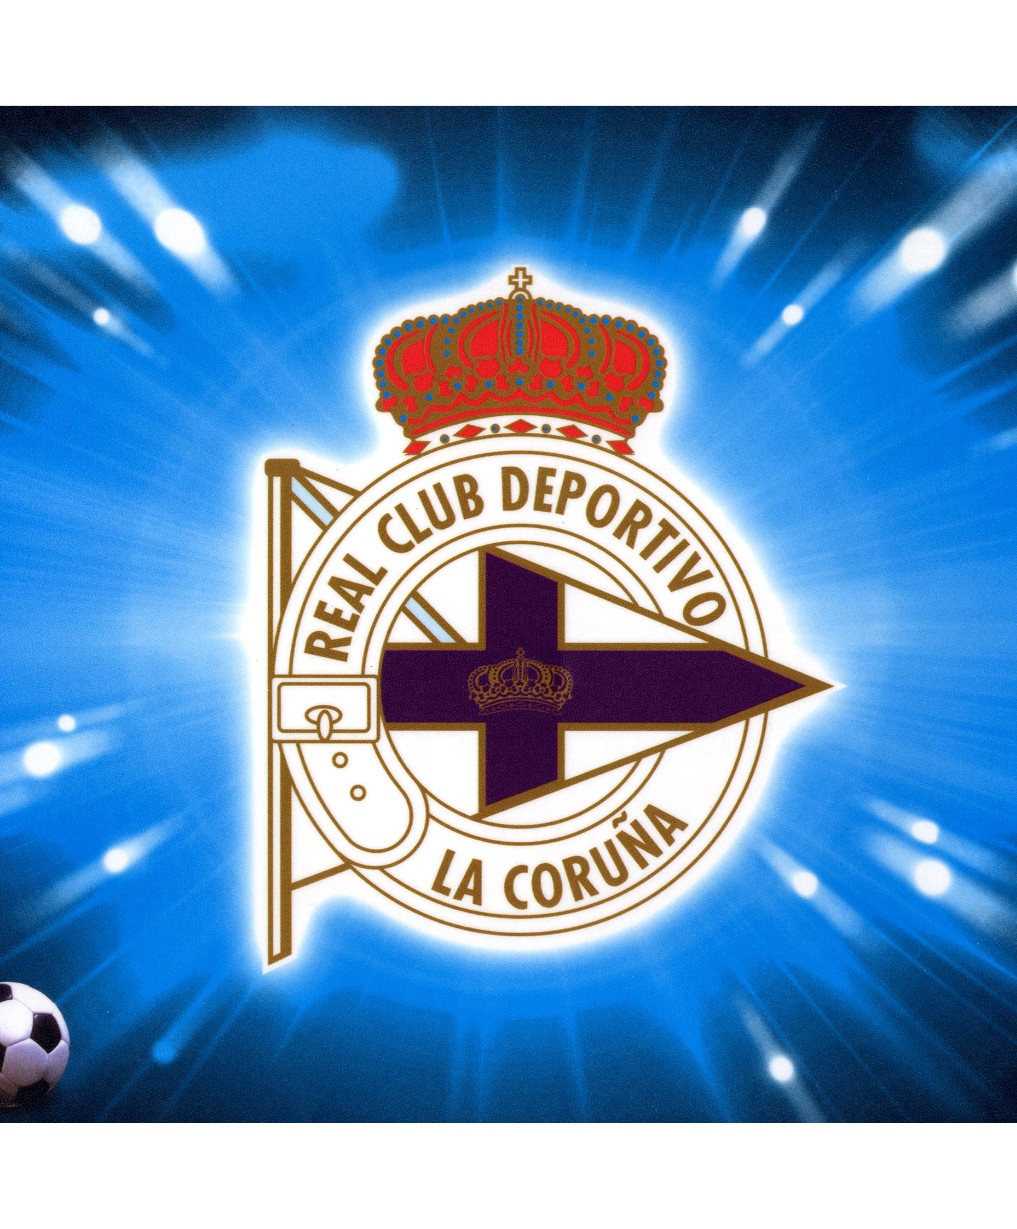 Deportivo De La Coruña Backgrounds, Compatible - PC, Mobile, Gadgets| 1017x1229 px